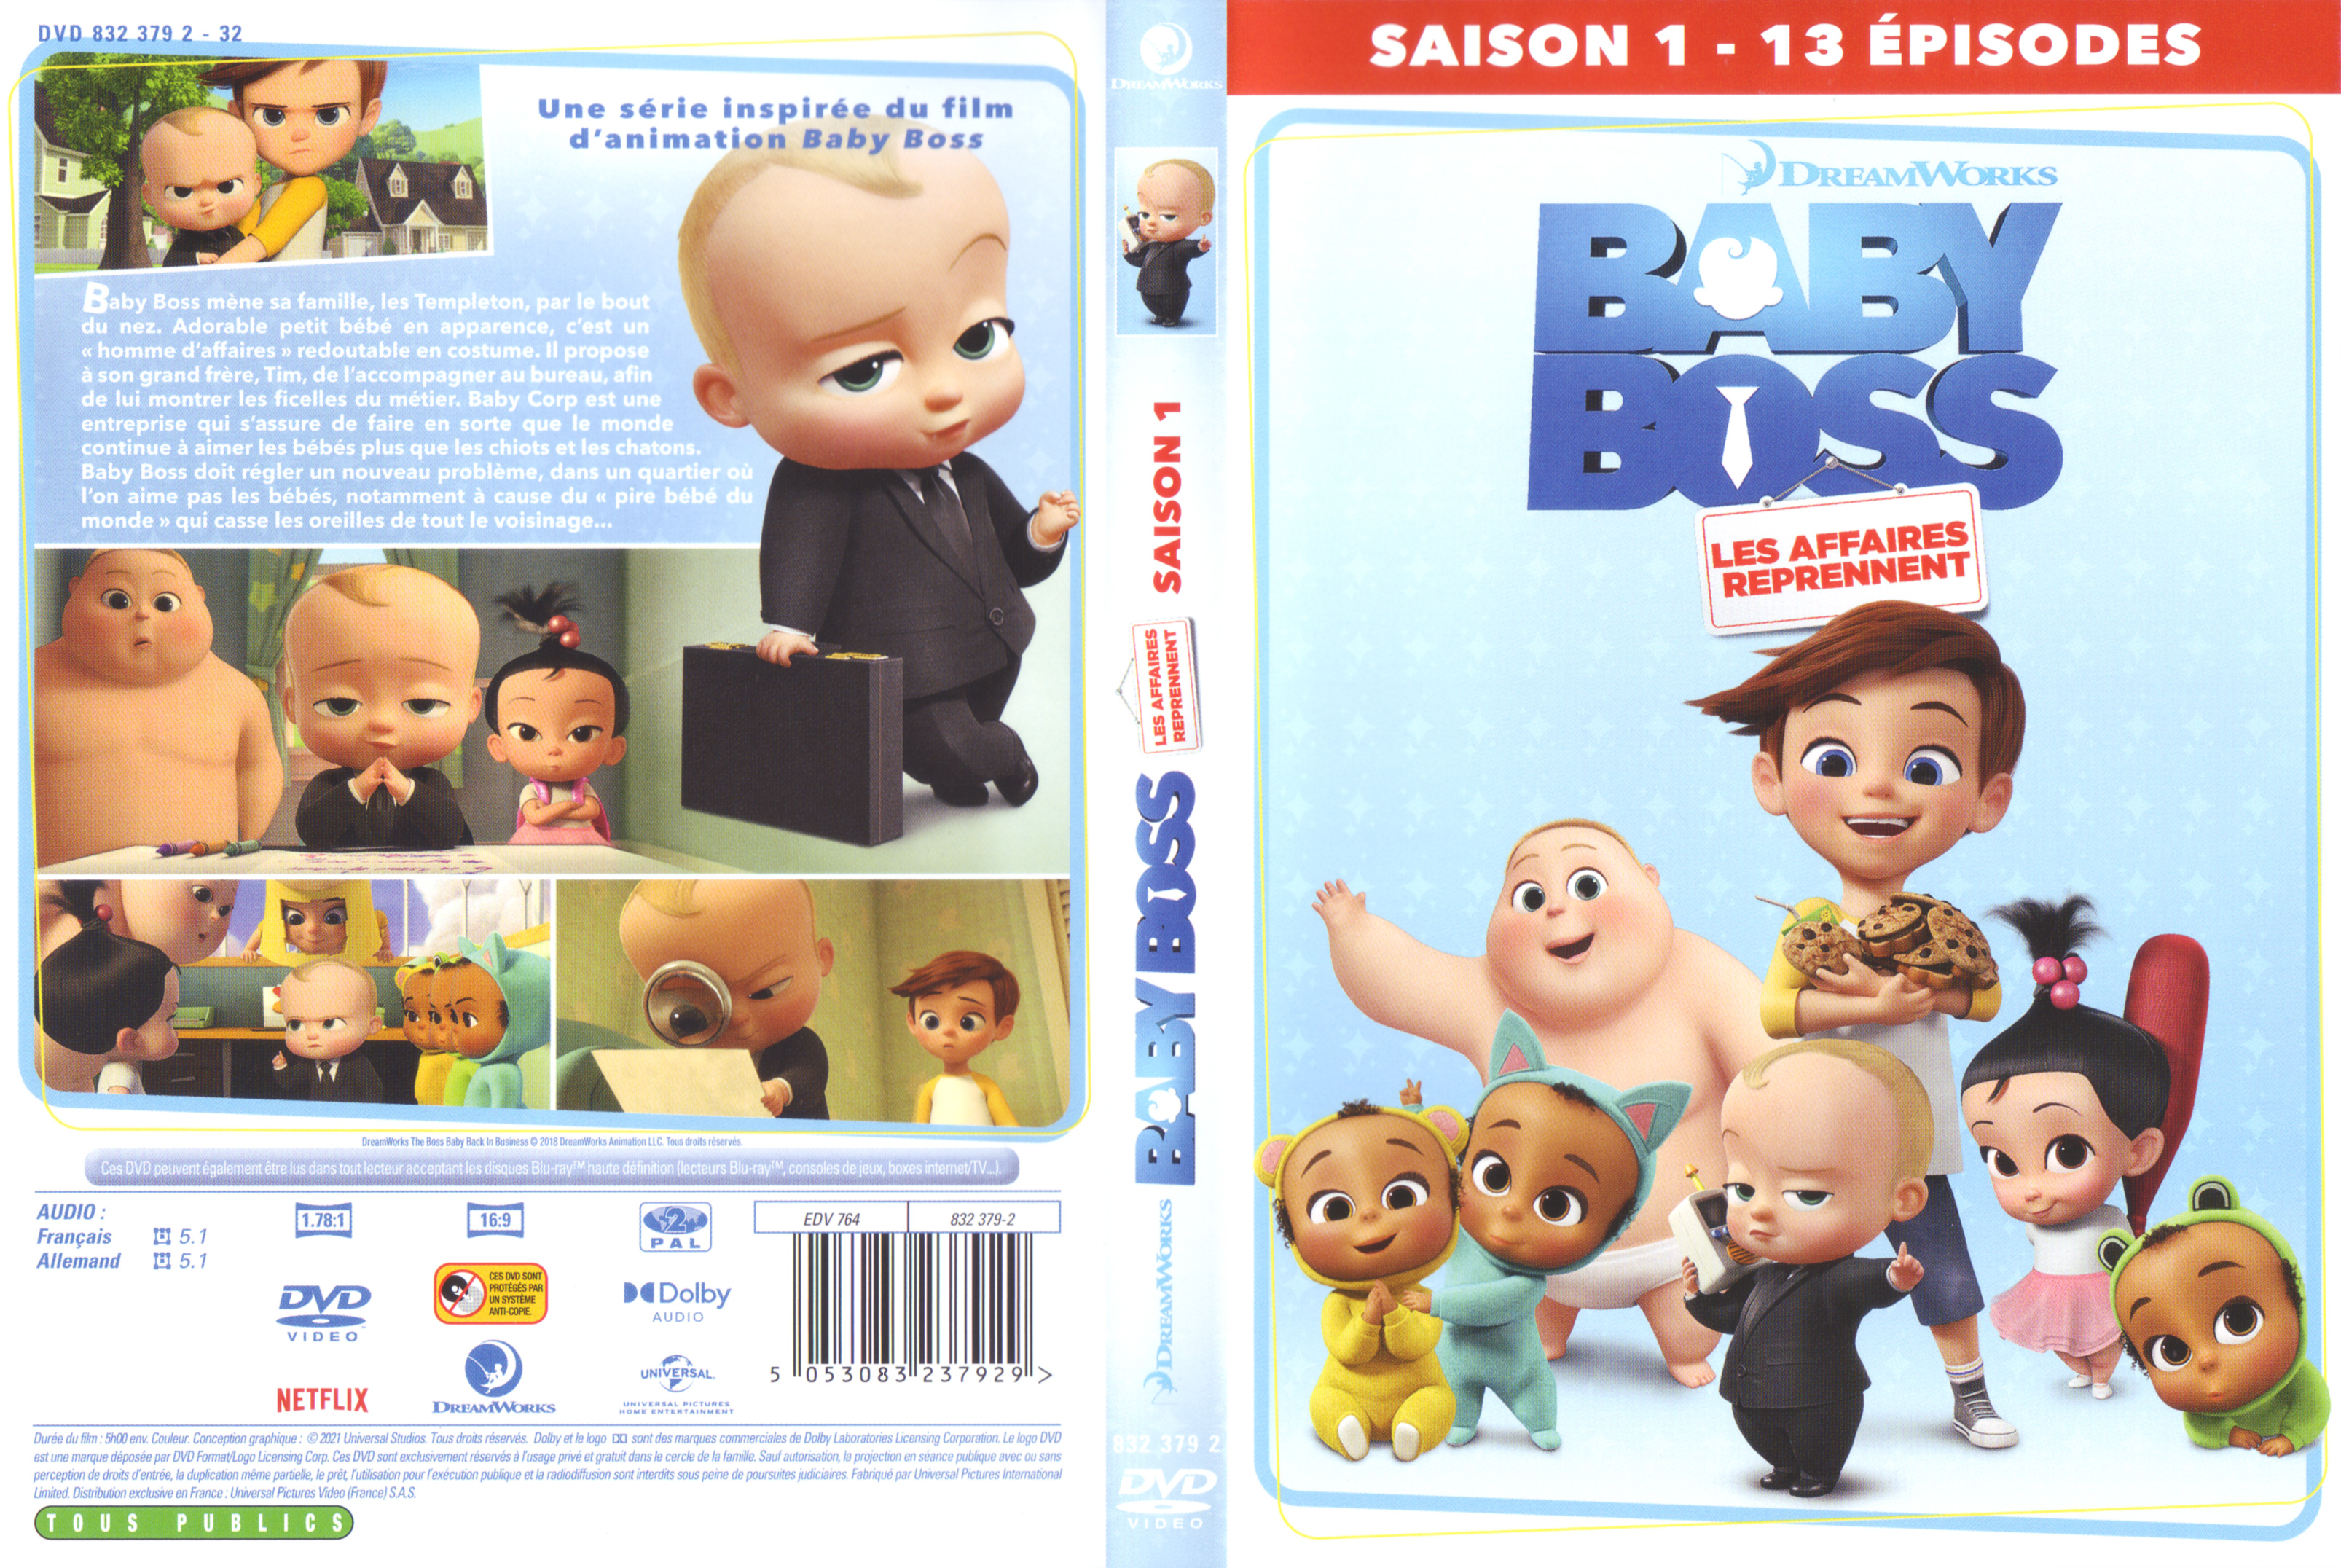 Jaquette DVD Baby Boss Les affaires reprennent Saison 1